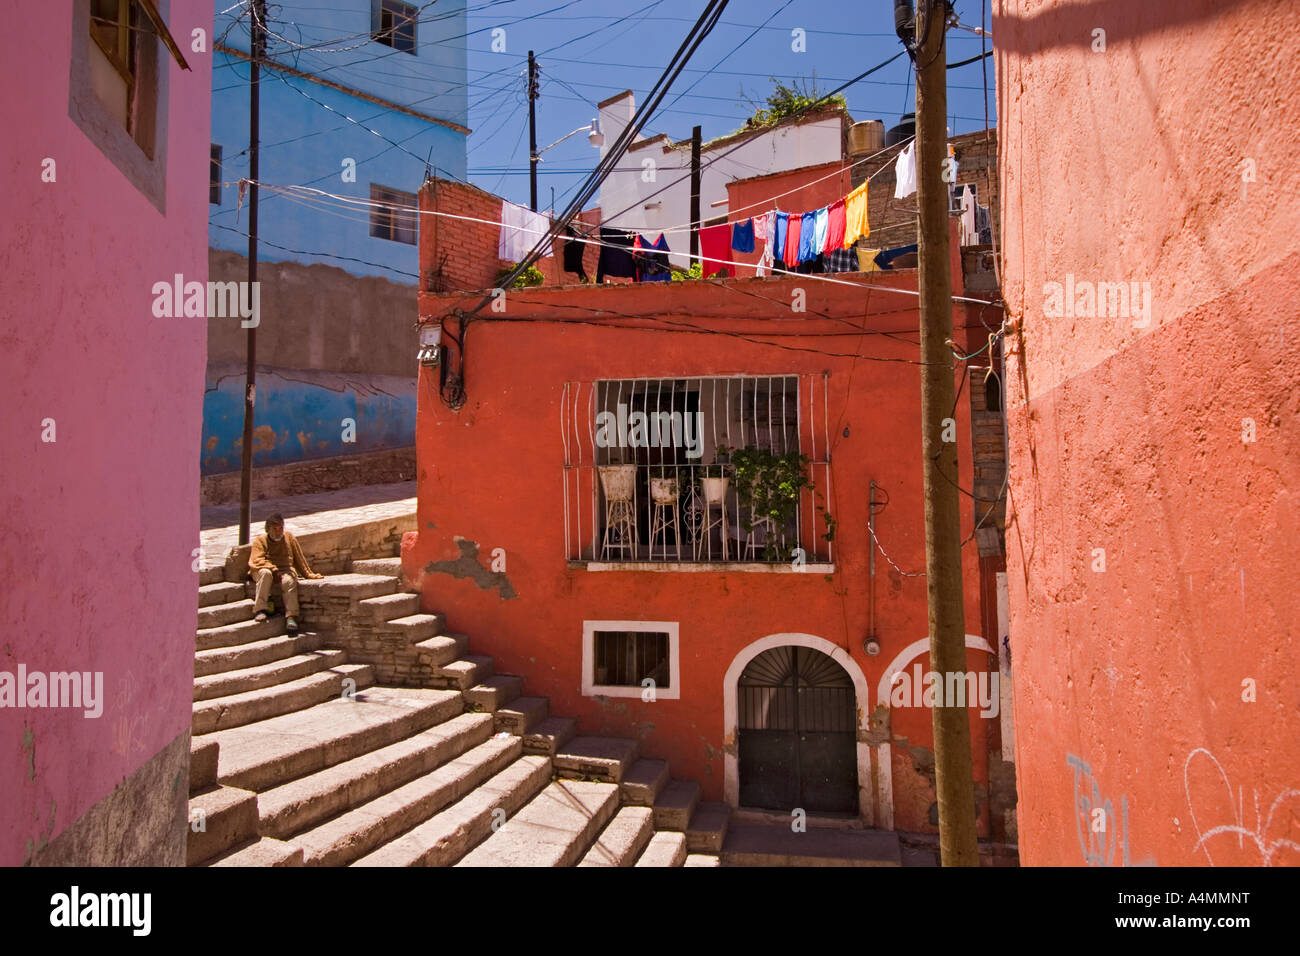 Une rue paisible dans un quartier ouvrier de Guanajuato (Mexique). Une rue paisible d'un quartier populaire de Guanajuato. Banque D'Images